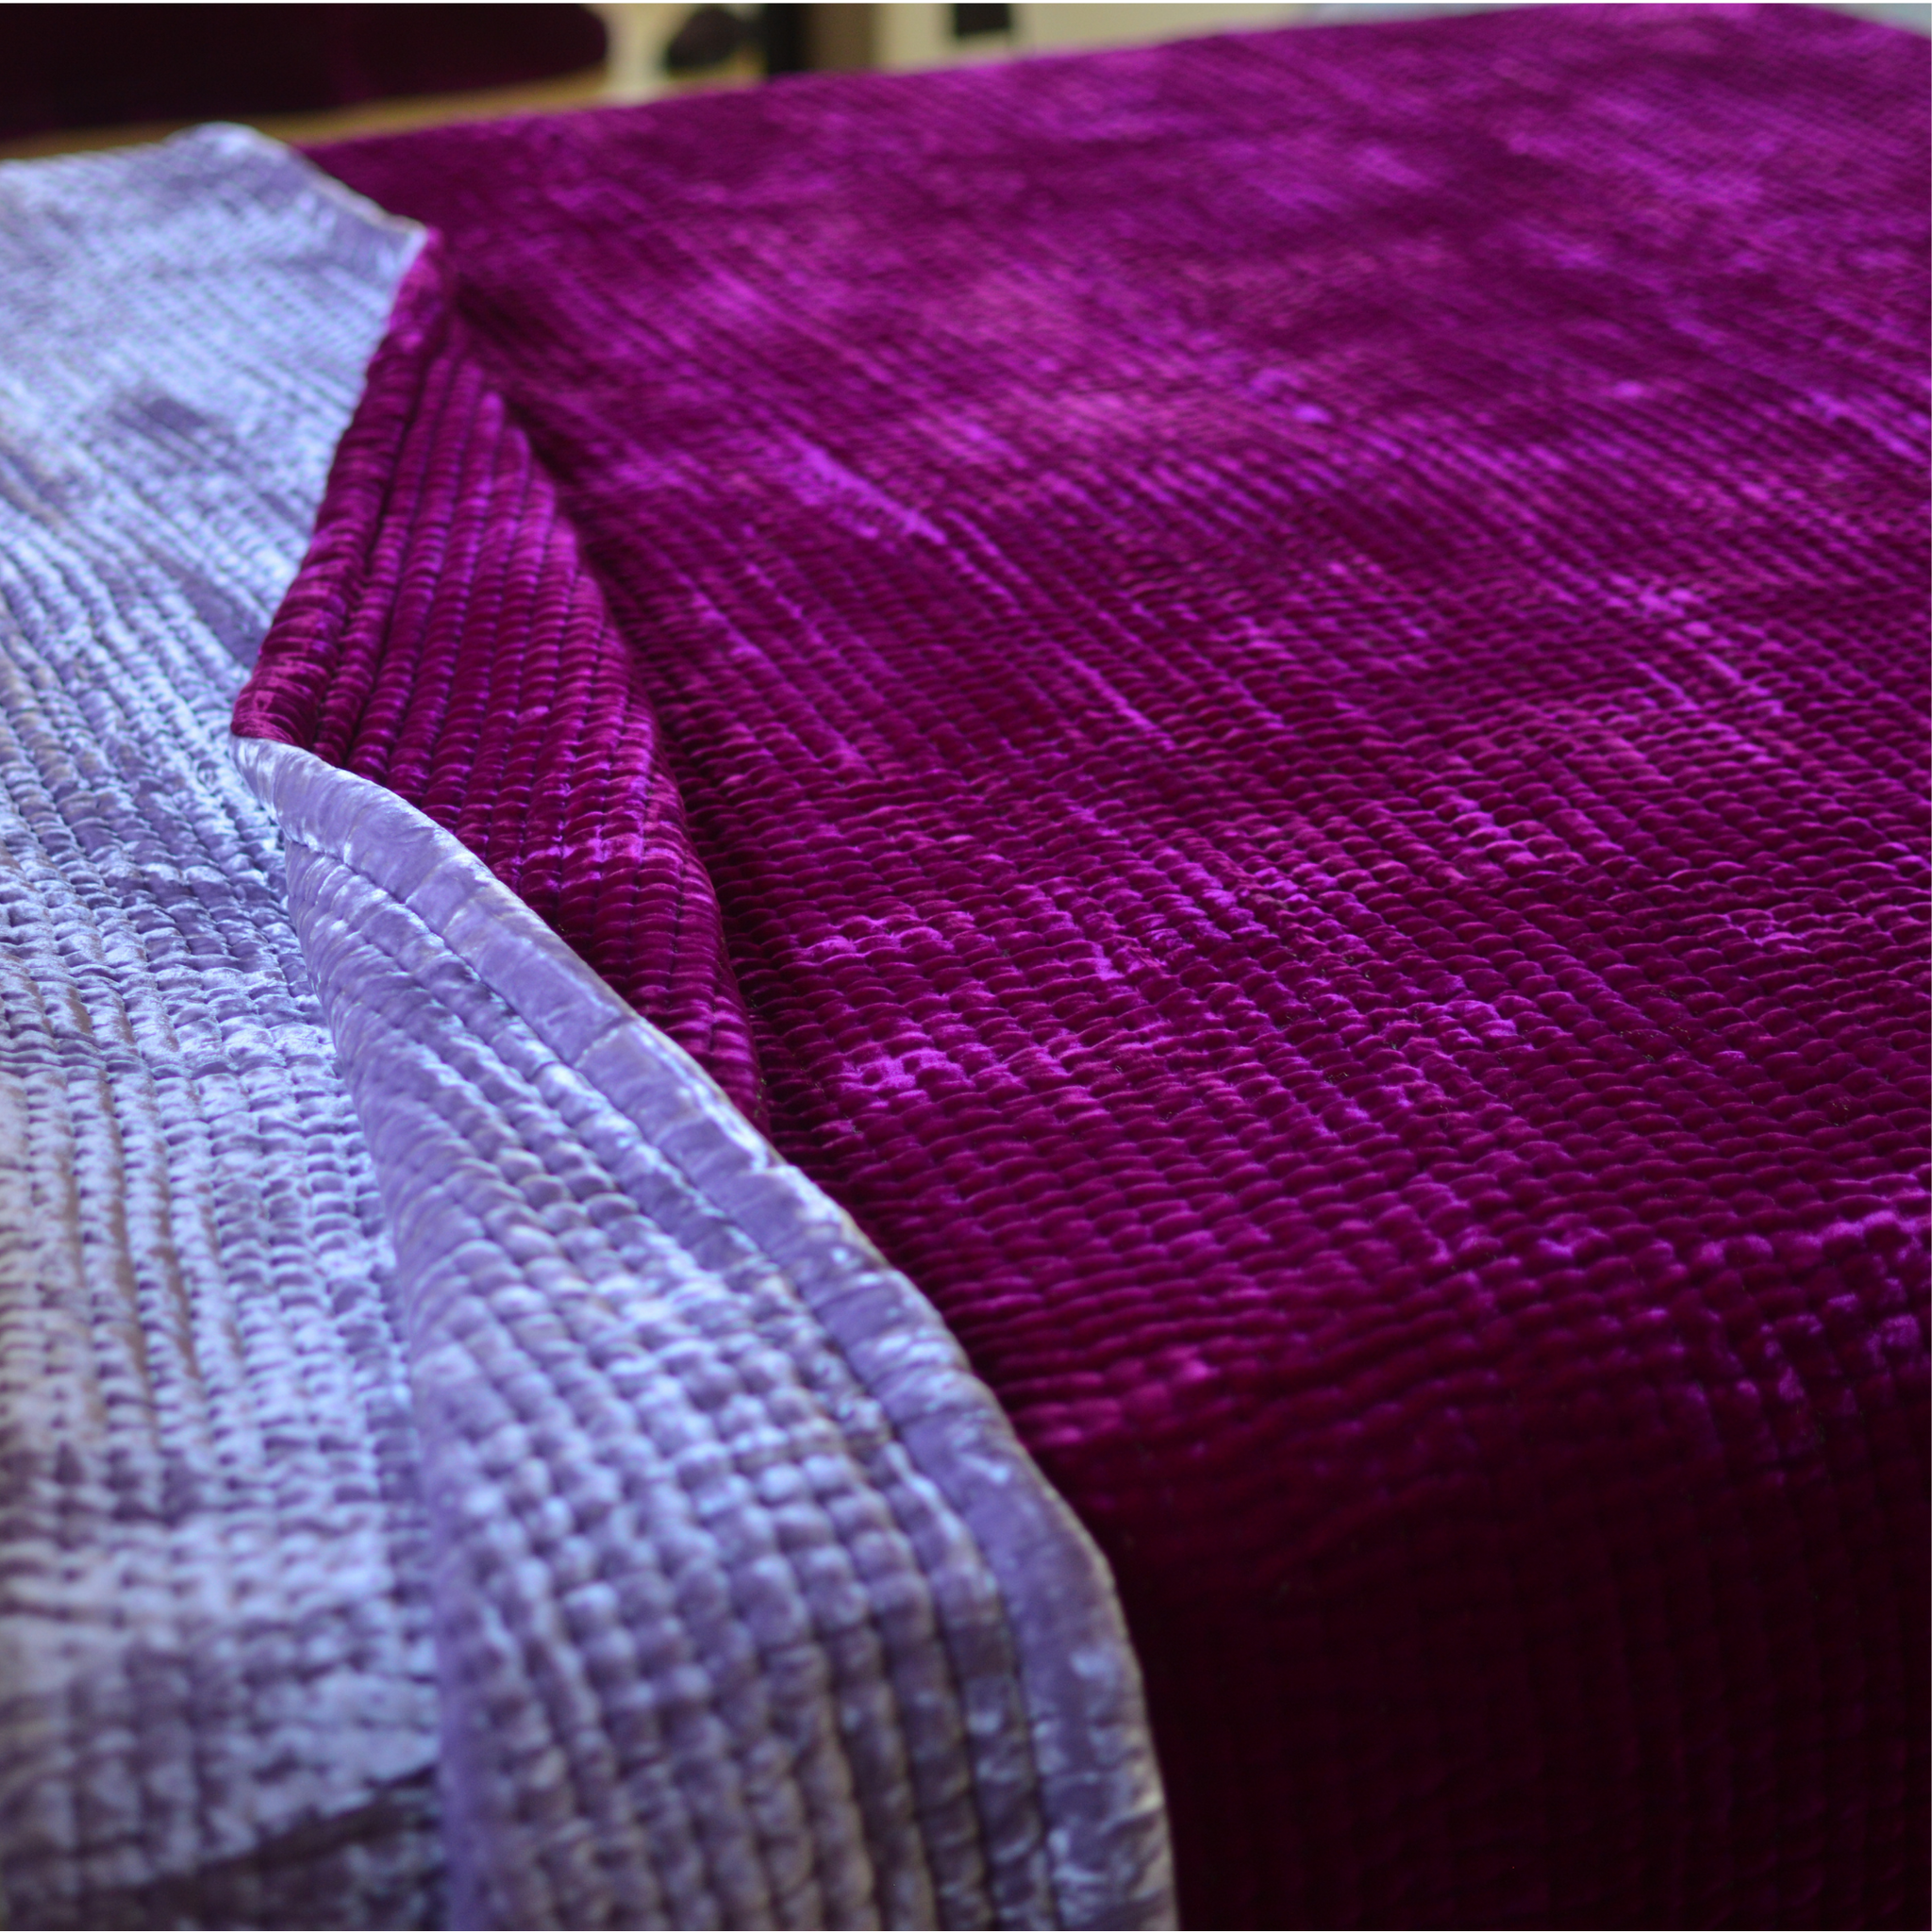 Silk Velvet Quilt & Shams-Line Hand Stitch - Silk Velvet Blanket Both Size - Lavender and Fuchsia